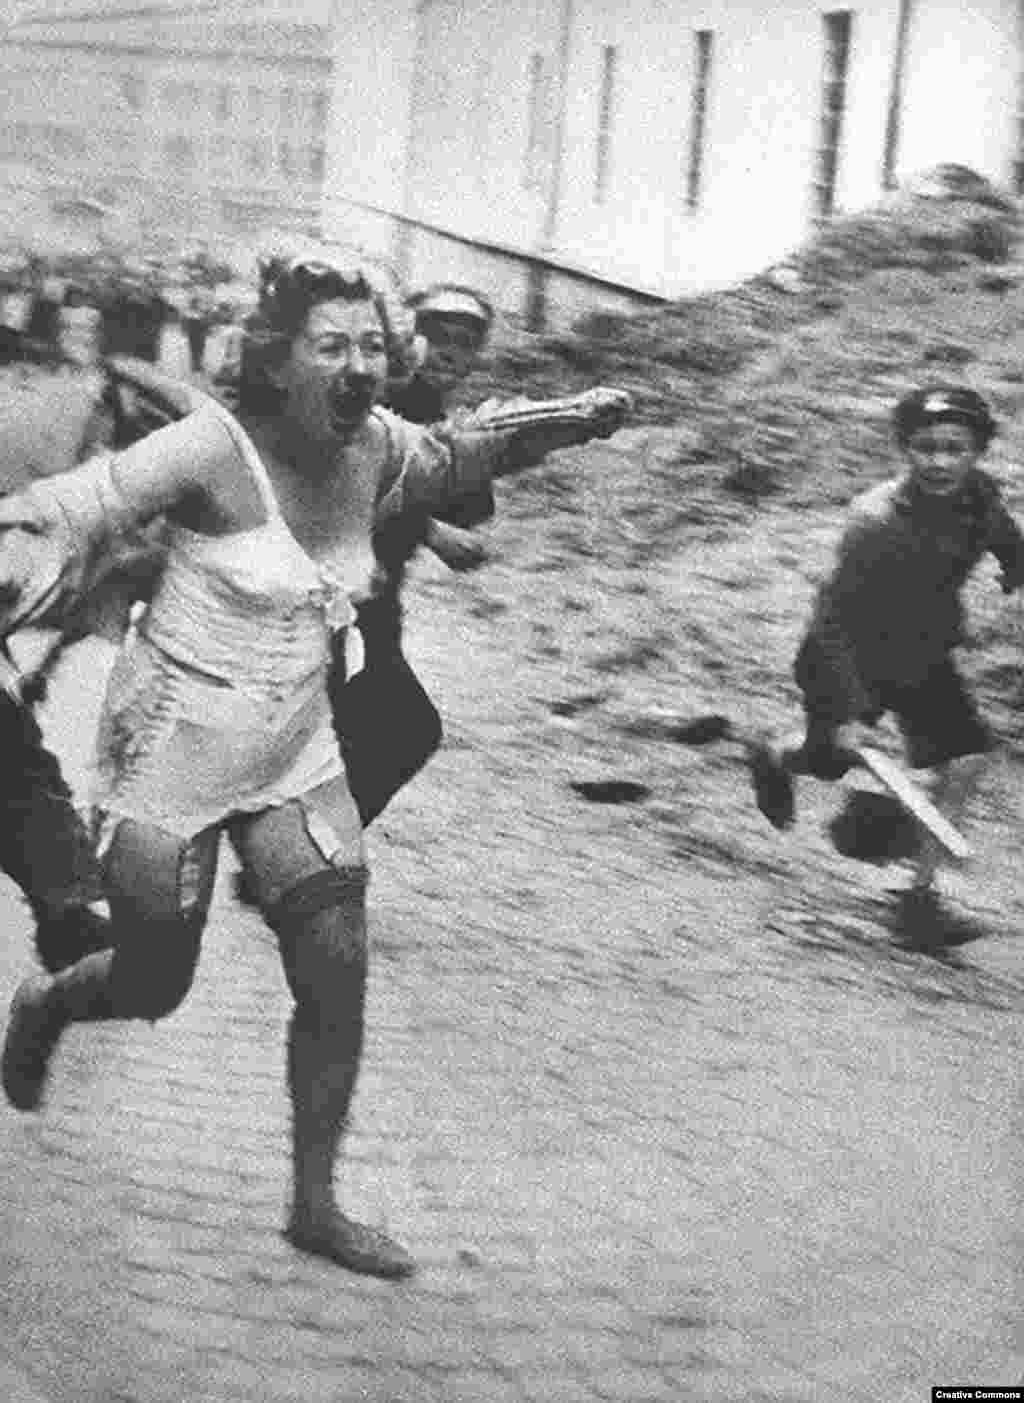 Еврейка убегает от толпы во Львове, городе, который в межвоенное время был польским, затем оккупирован СССР, а после нацистами. Фото сделано в июне или июле 1941 года. При активном поощрении нацистов евреи советской Украины и других оккупированных территорий проживали настоящие ужасы. Тысячи из них были замучены и убиты в ходе погромов, устроенных в Центральной и Восточной Европе